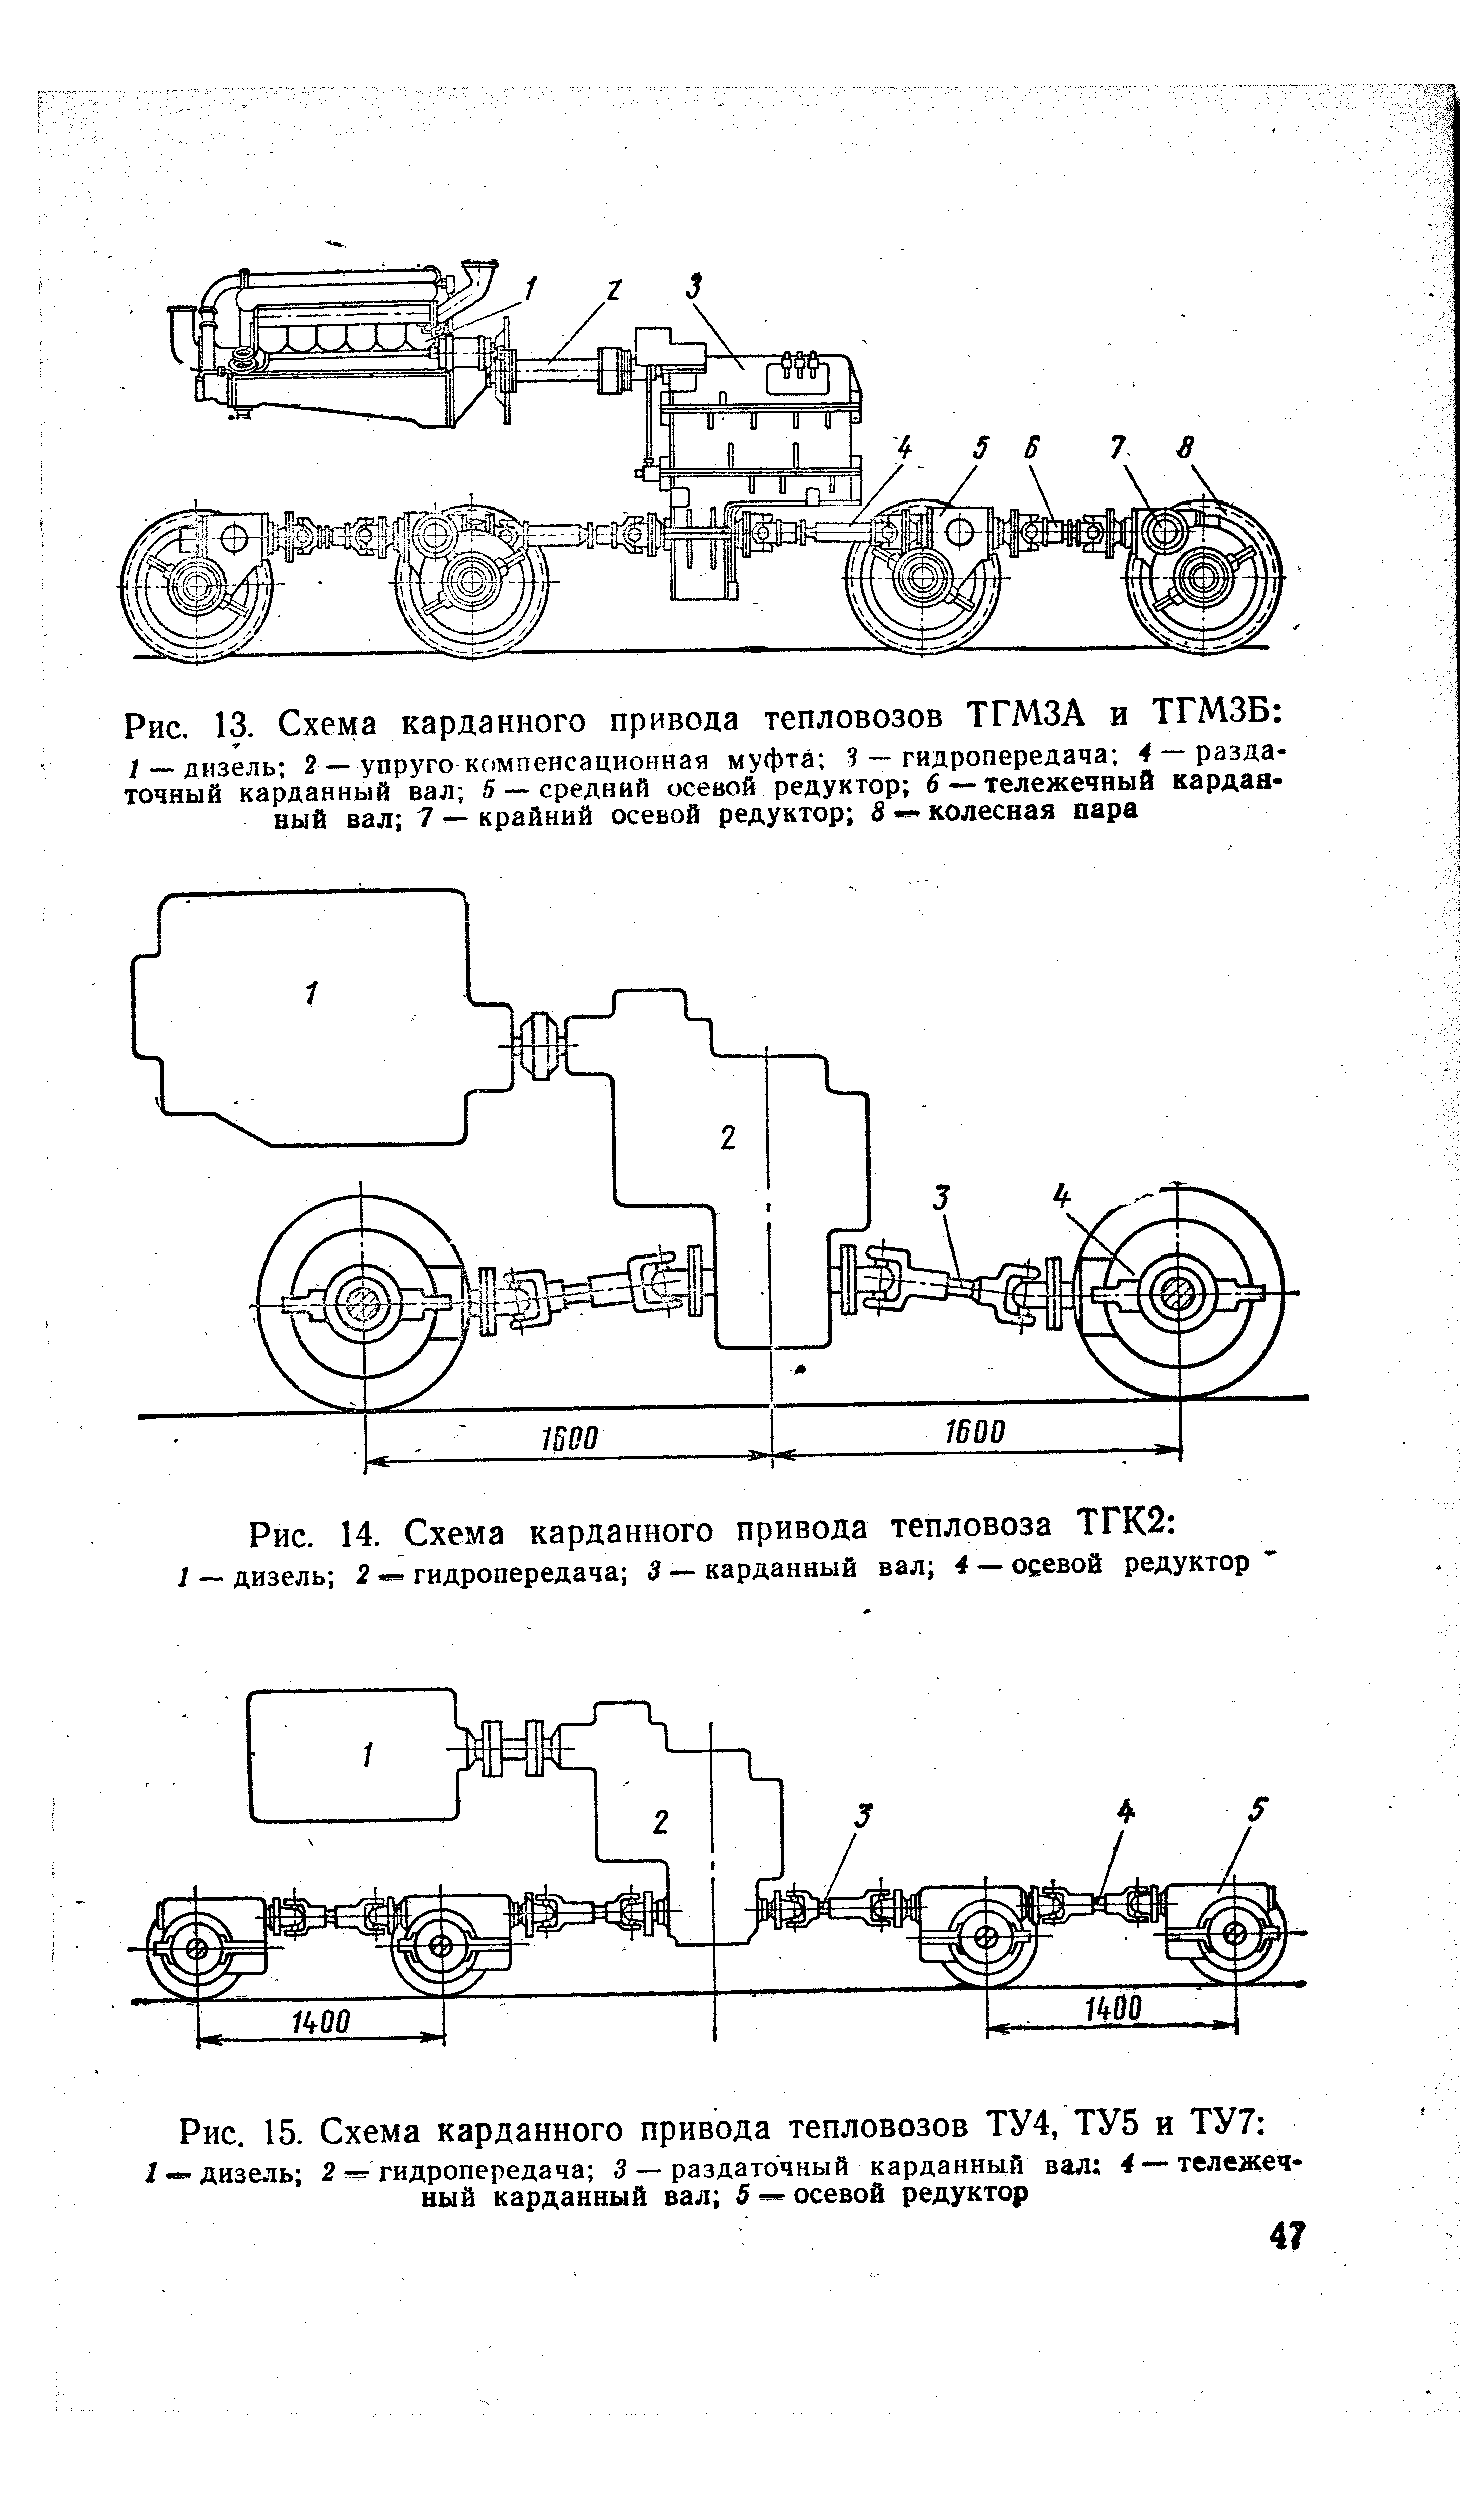 Рис. 13. Схема карданного привода тепловозов ТГМЗА и ТГМЗБ 
